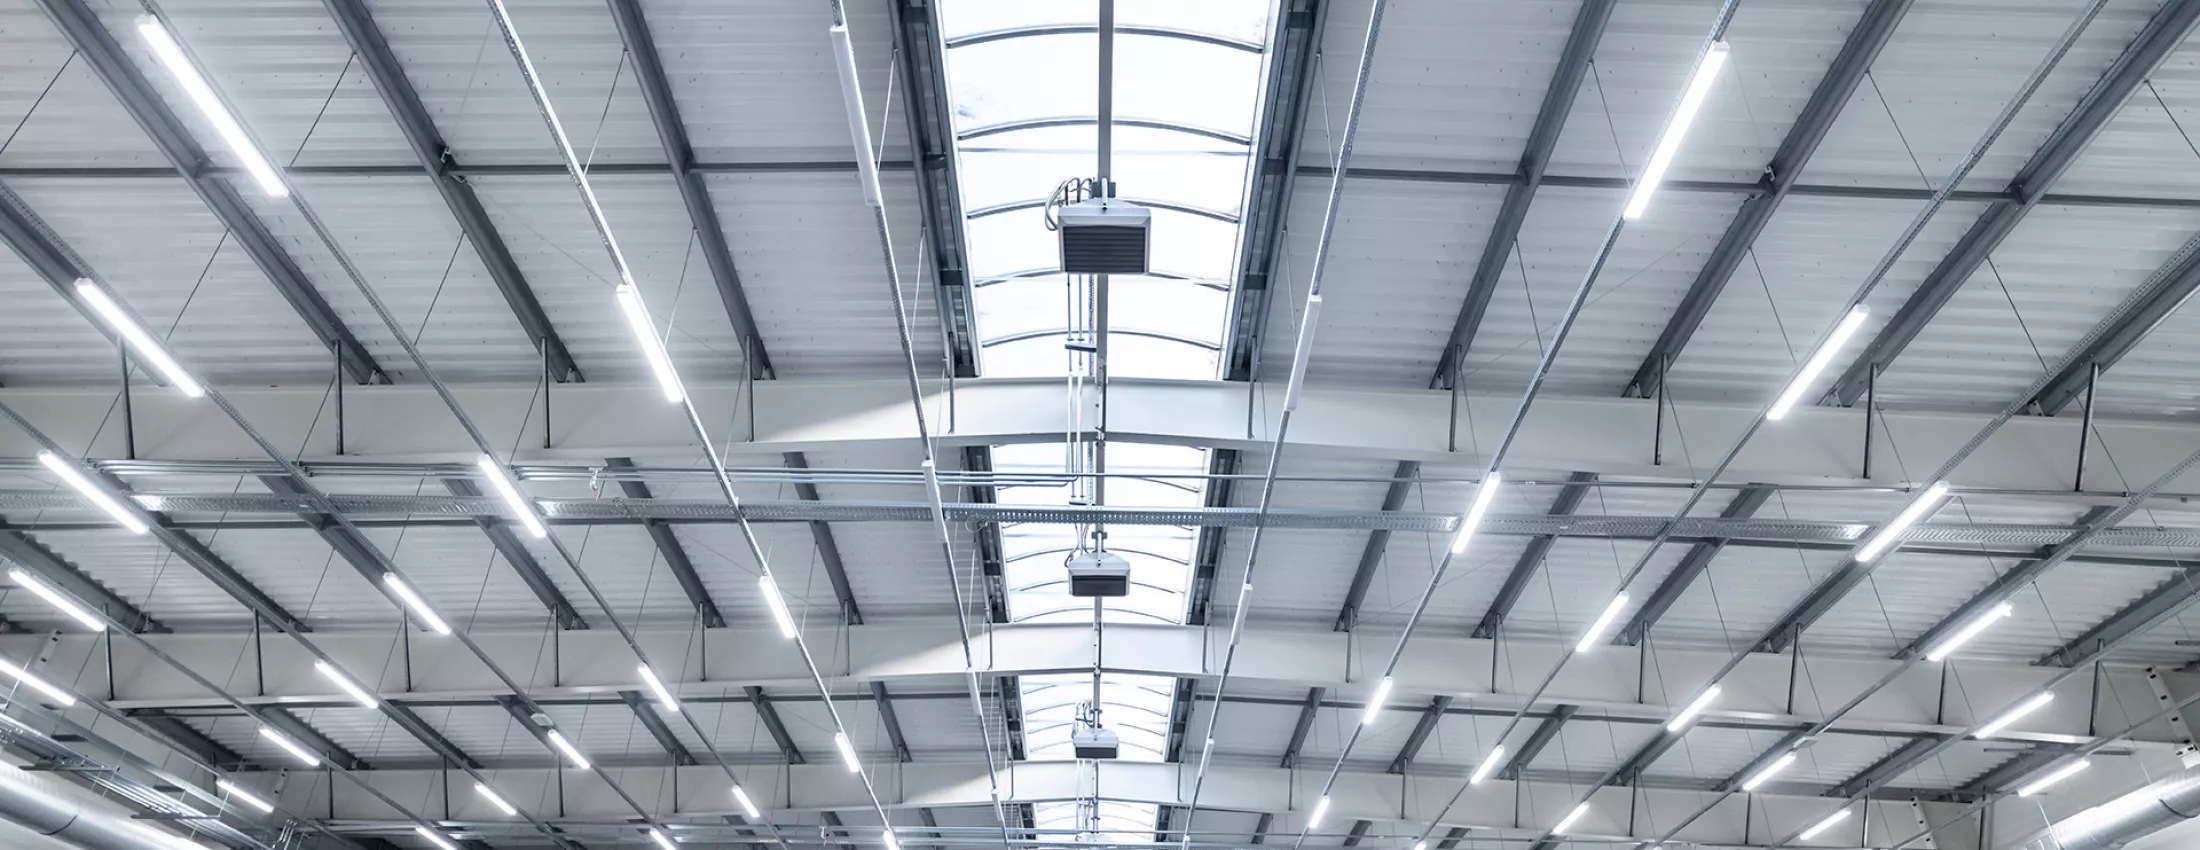 Titelbild: Decke einer Industriehalle mit LED